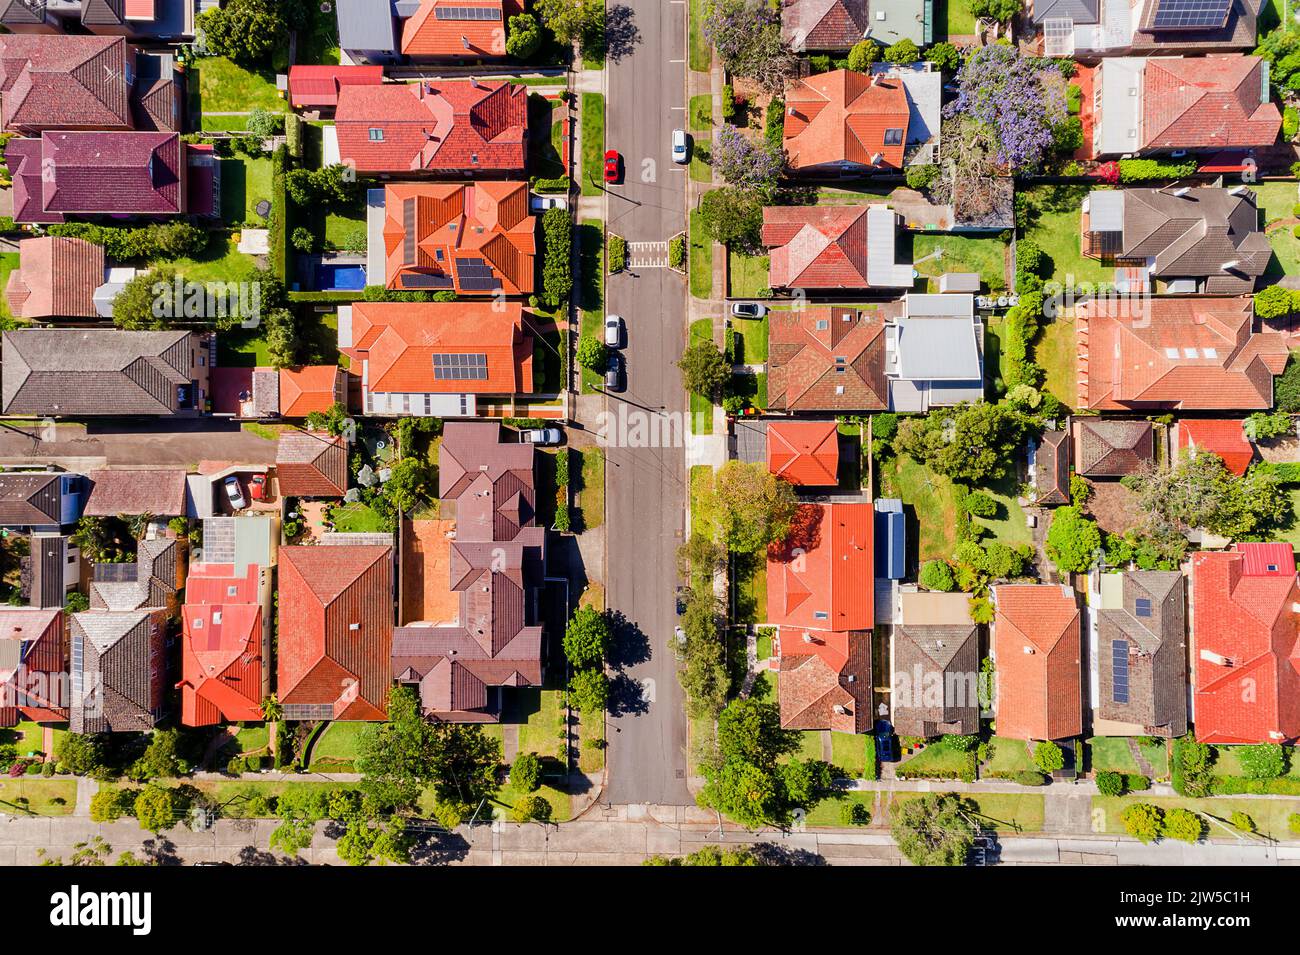 Caminos de entrada, carriles y verdes calles residenciales con casas separadas en la costa norte baja rico barrio Chatswood de Greater Sydney - techo aéreo abajo Foto de stock